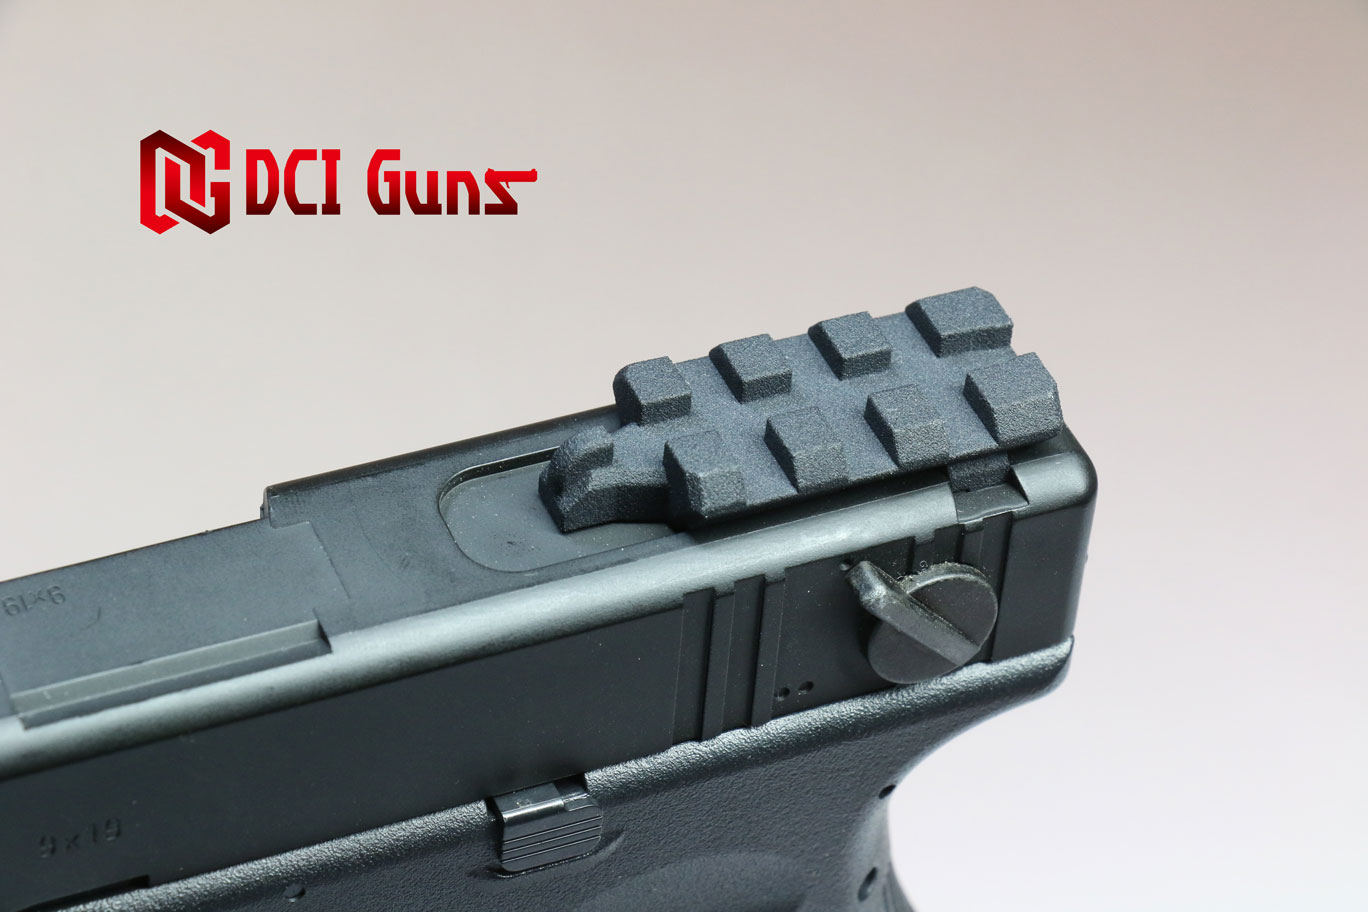 20ｍｍレールマウントV2.0 東京マルイ 電動G18C専用 | DCI Guns 公式